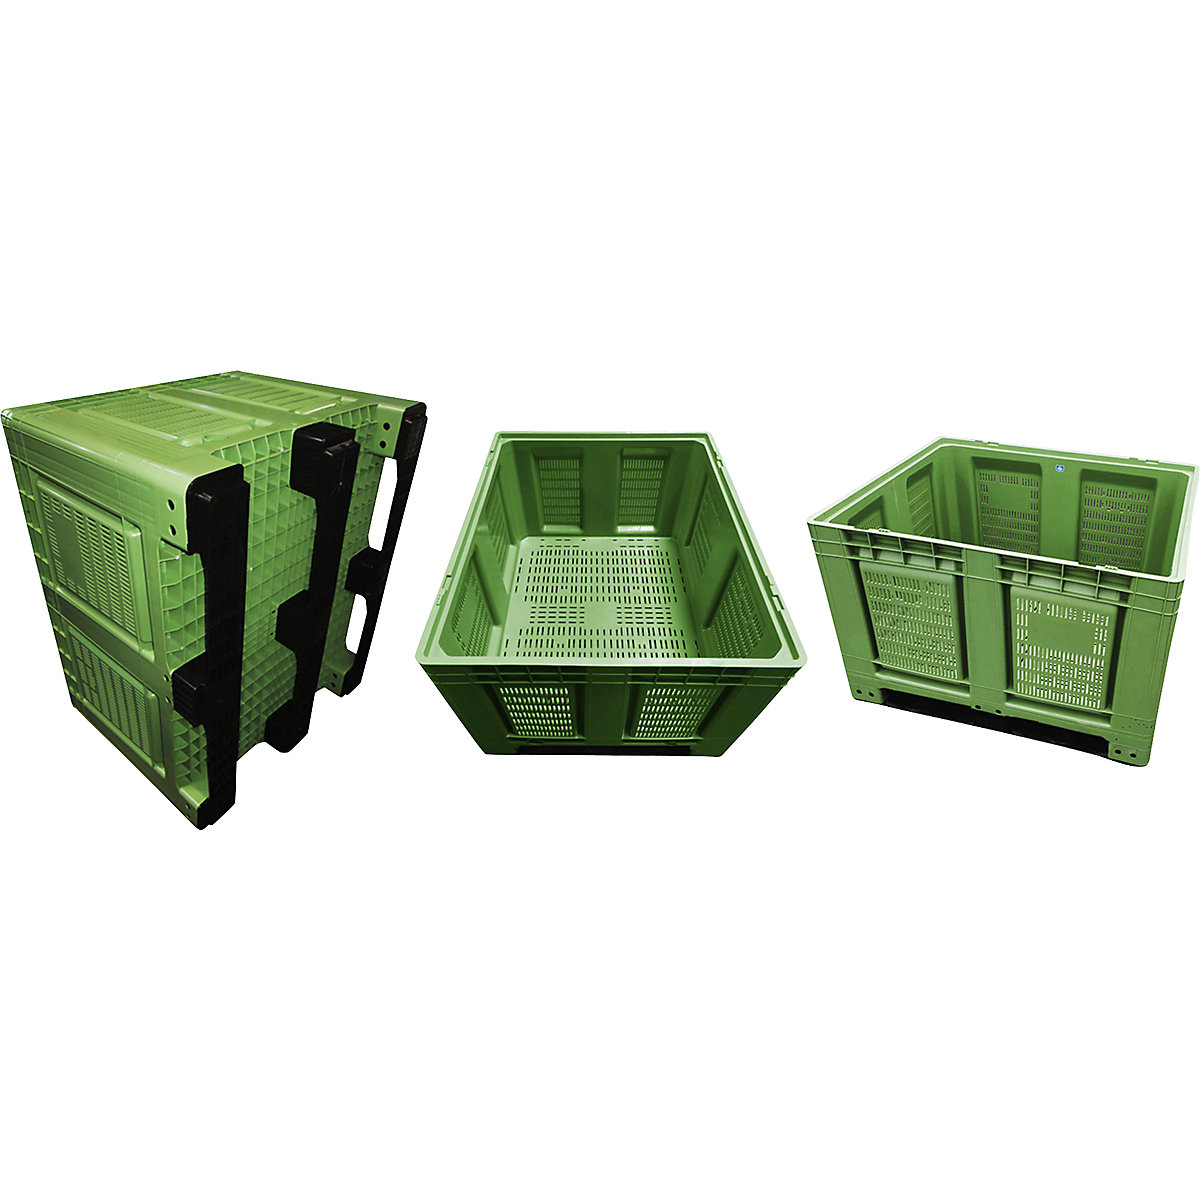 Palletcontainer, van HDPE, l x b x h = 1200 x 1000 x 790 mm, 3 lopers, met sleuven, groen-11